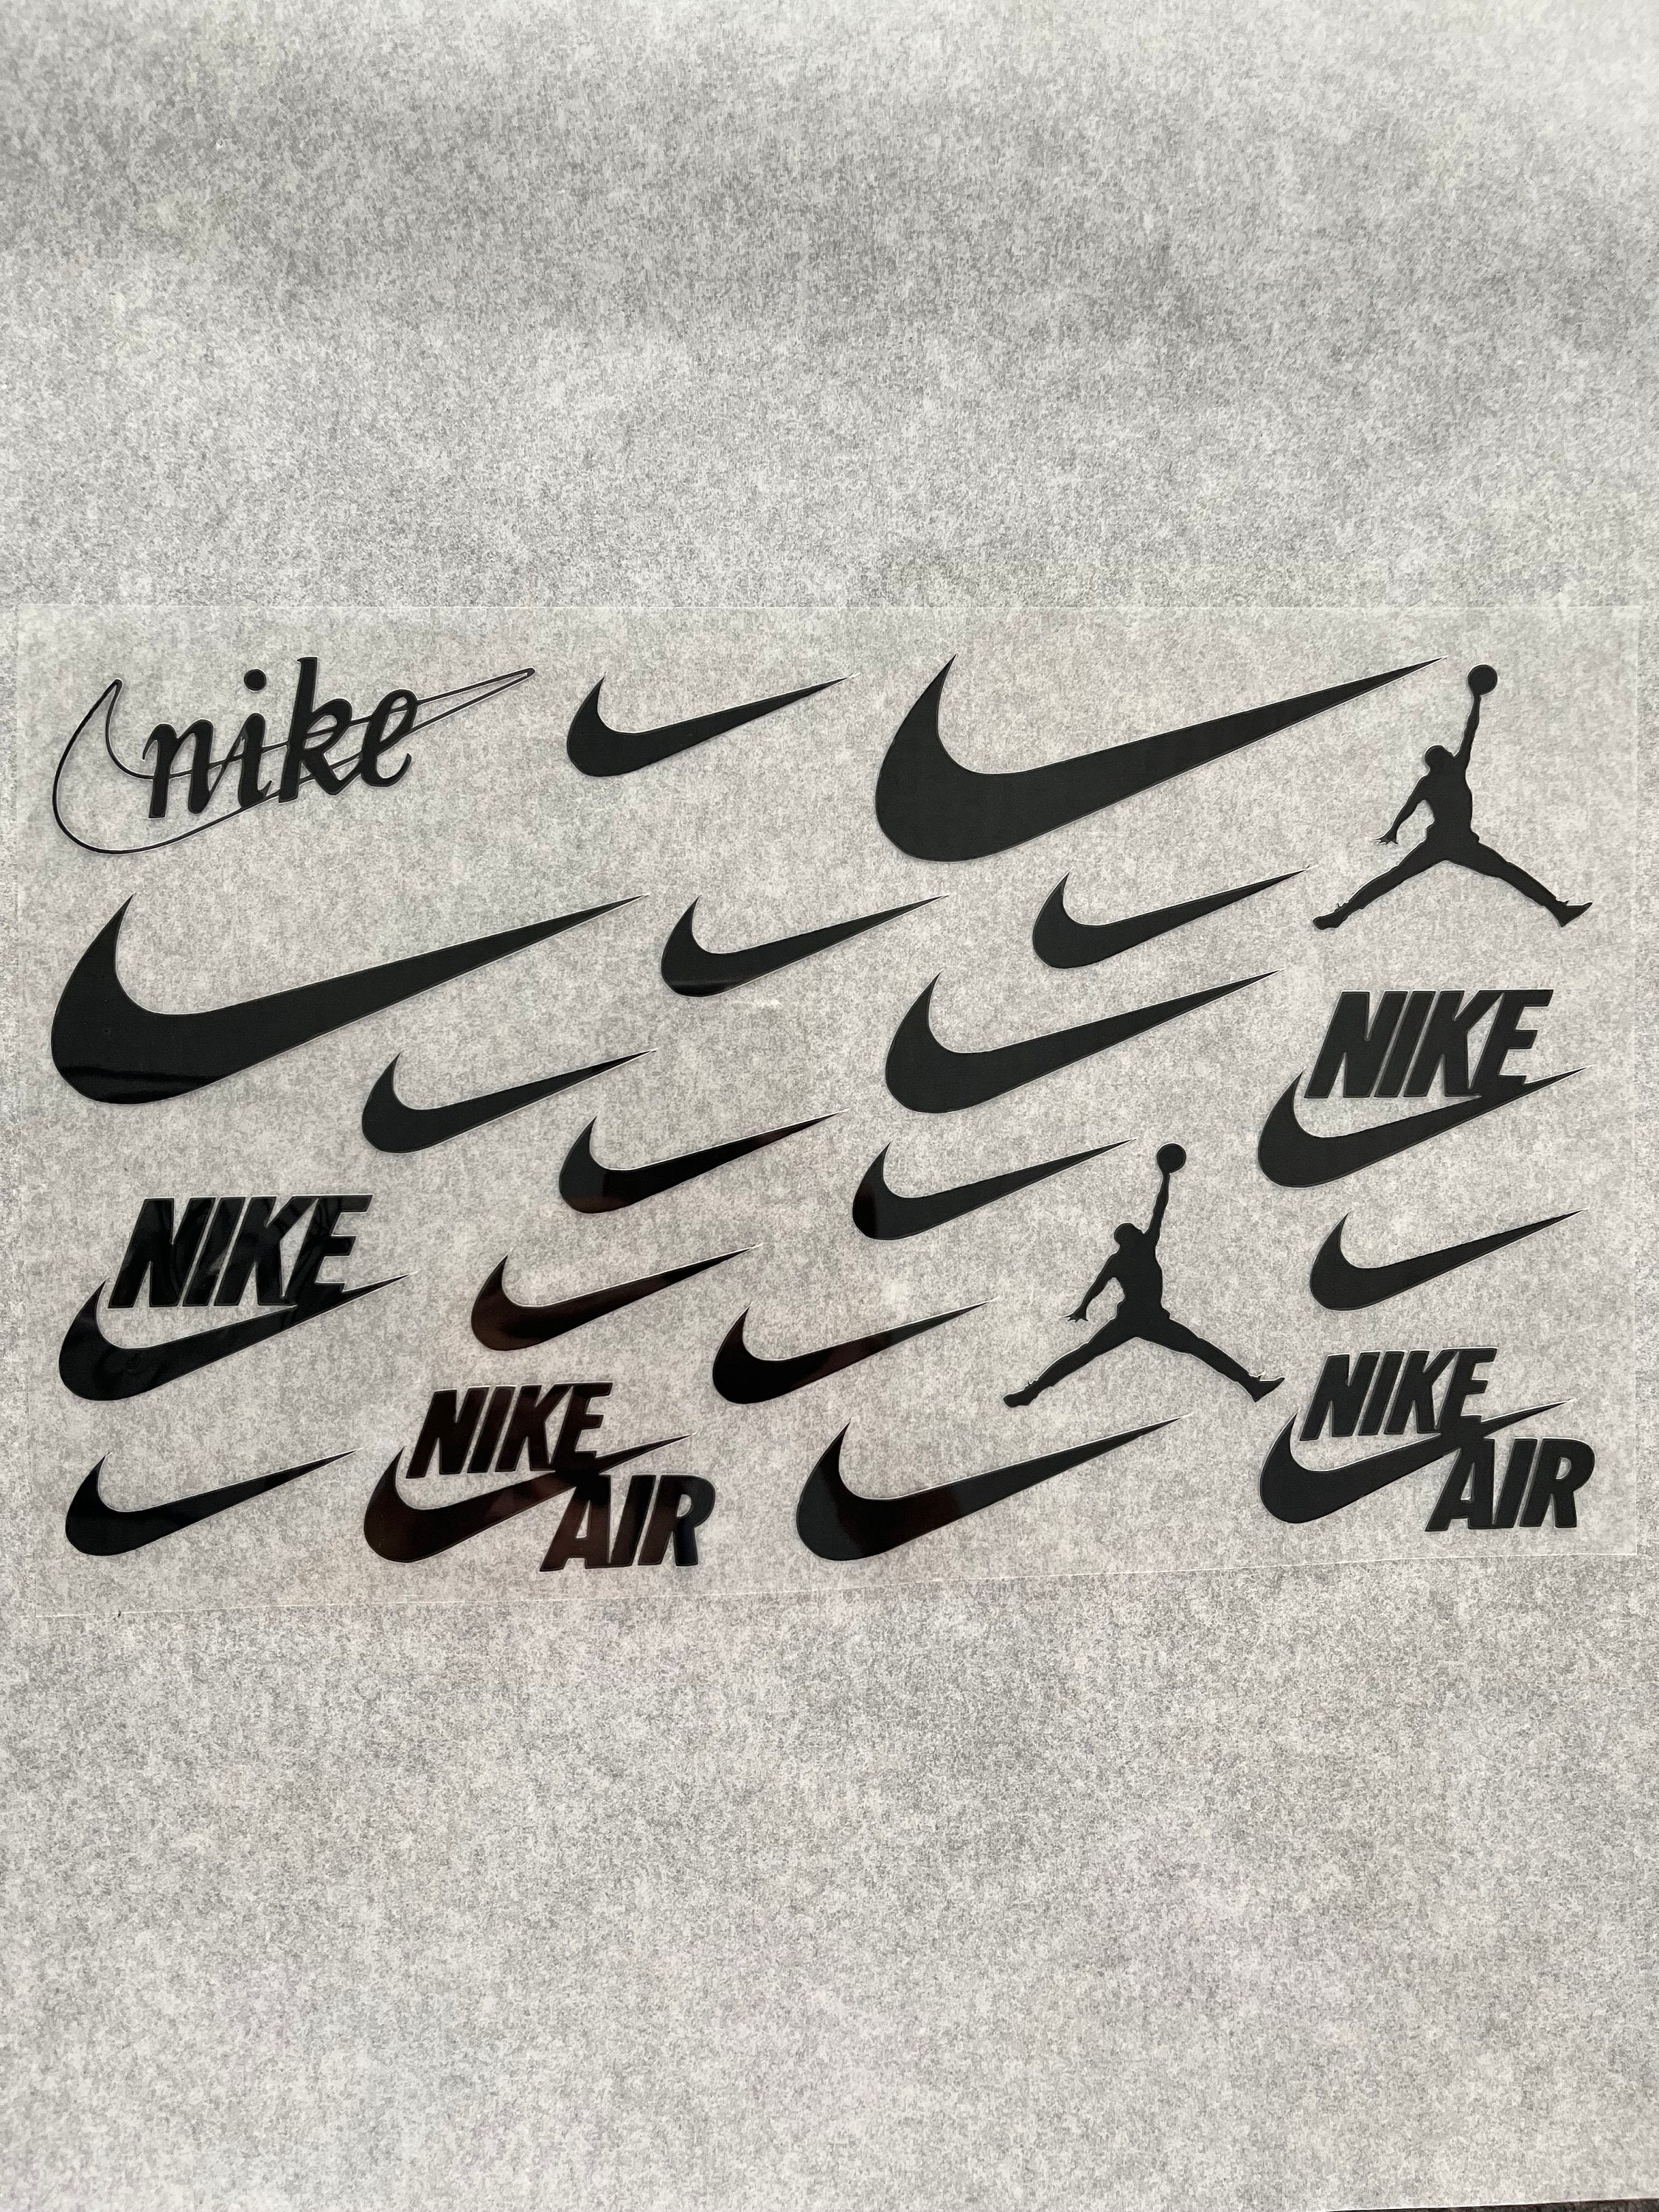 ayuda He reconocido Ambos Nike Logo Iron On - Etsy UK